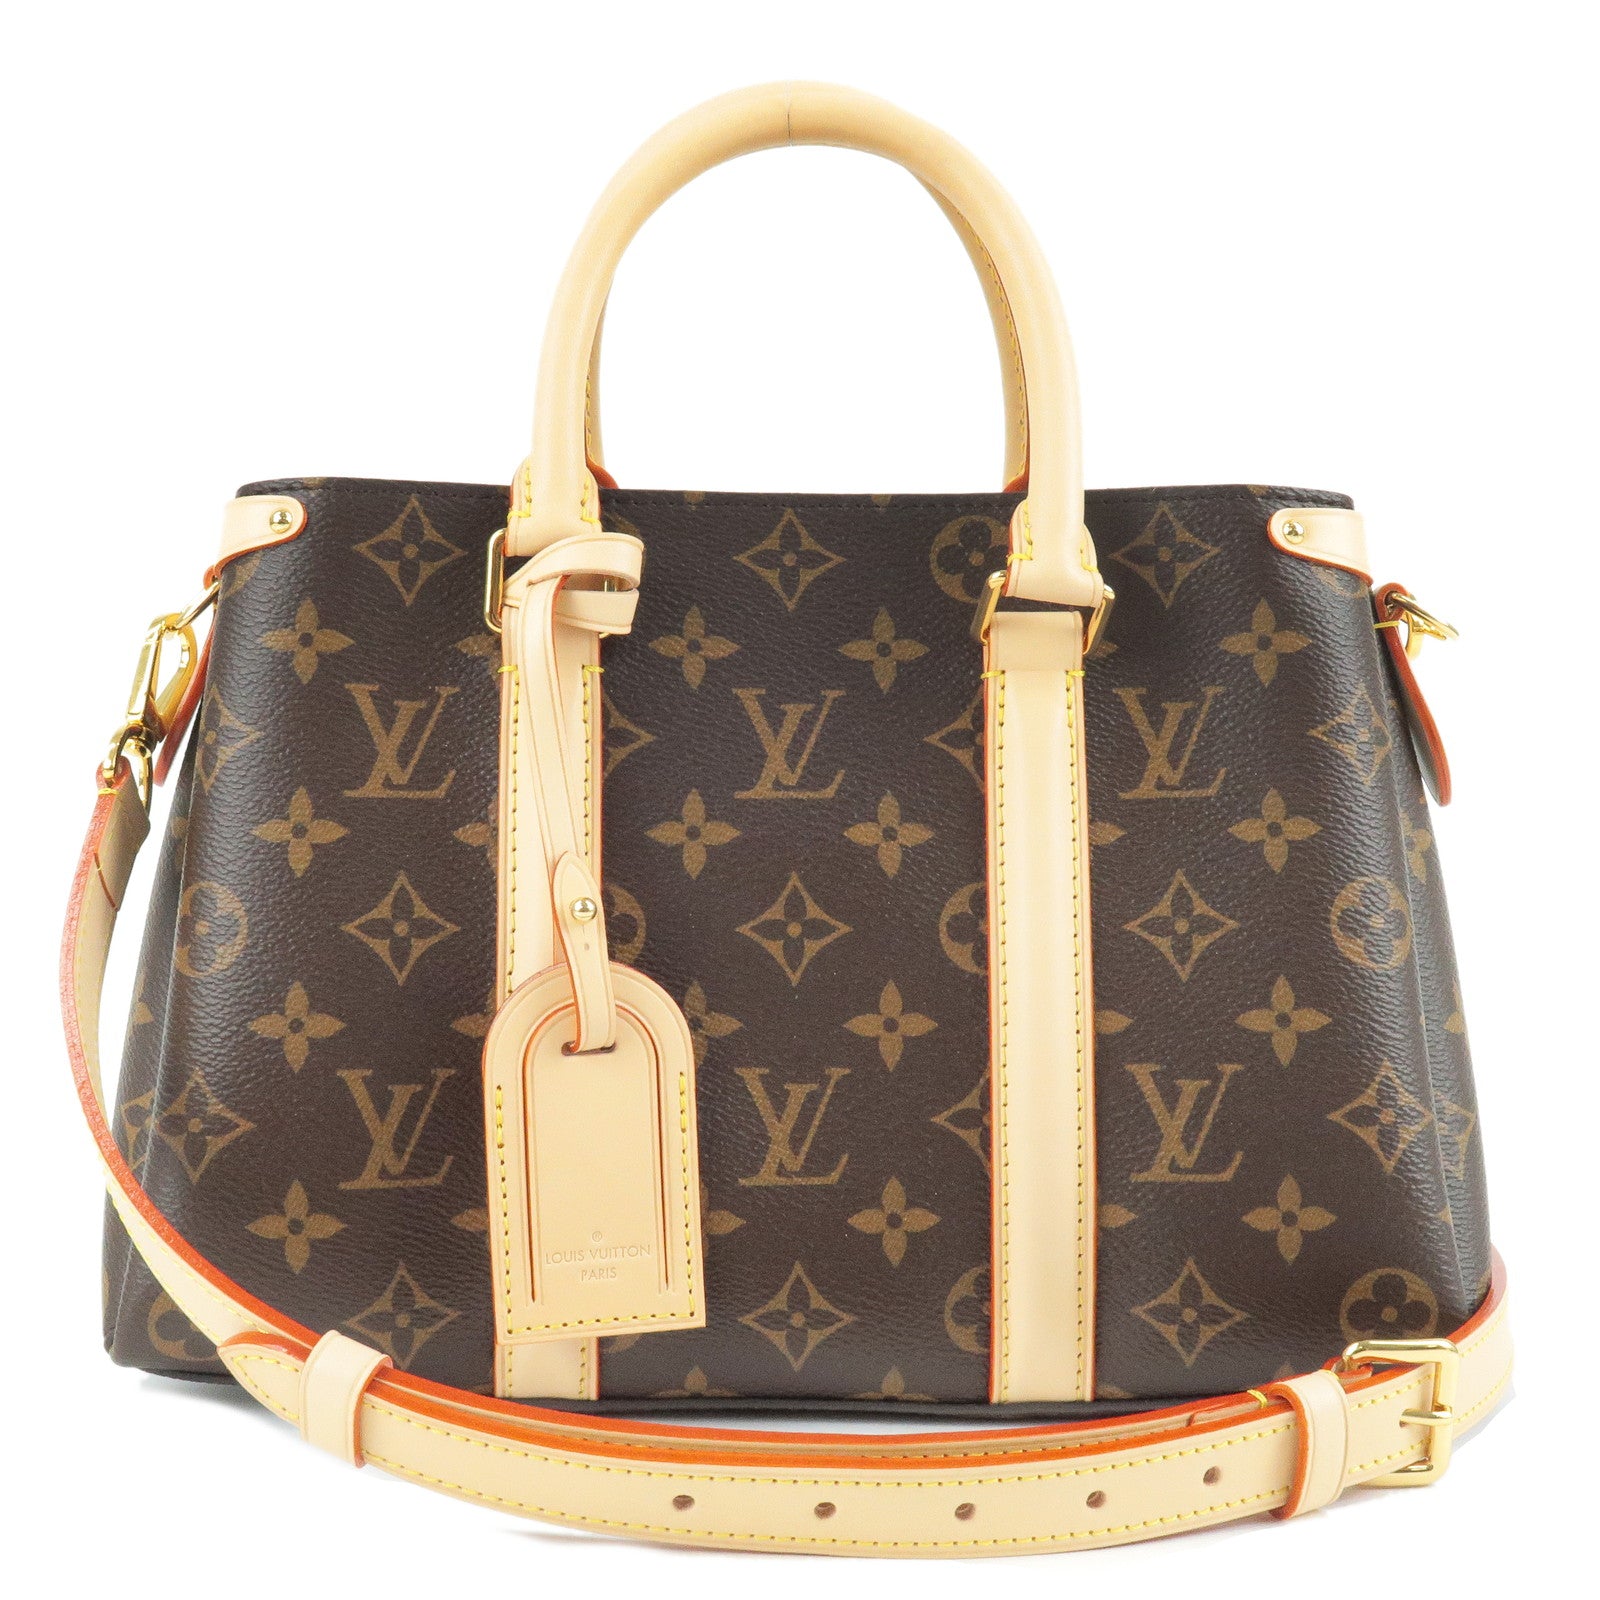 Louis Vuitton, Bags, Soufflot Bb Mint Condition